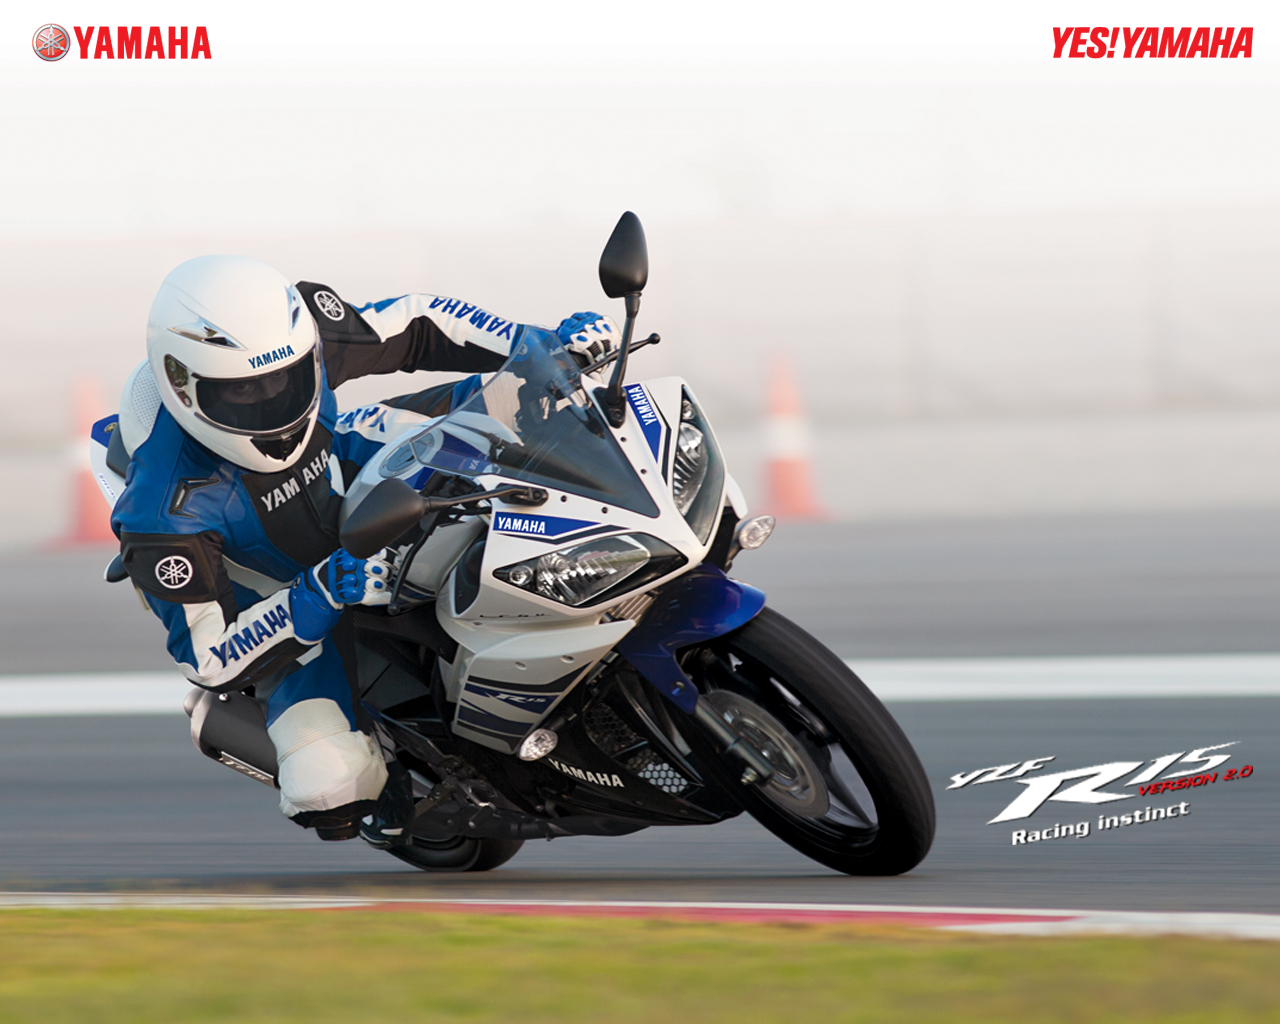 yamaha r15 version 2.0 fonds d'écran,véhicule terrestre,véhicule,moto,superbike racing,course sur route